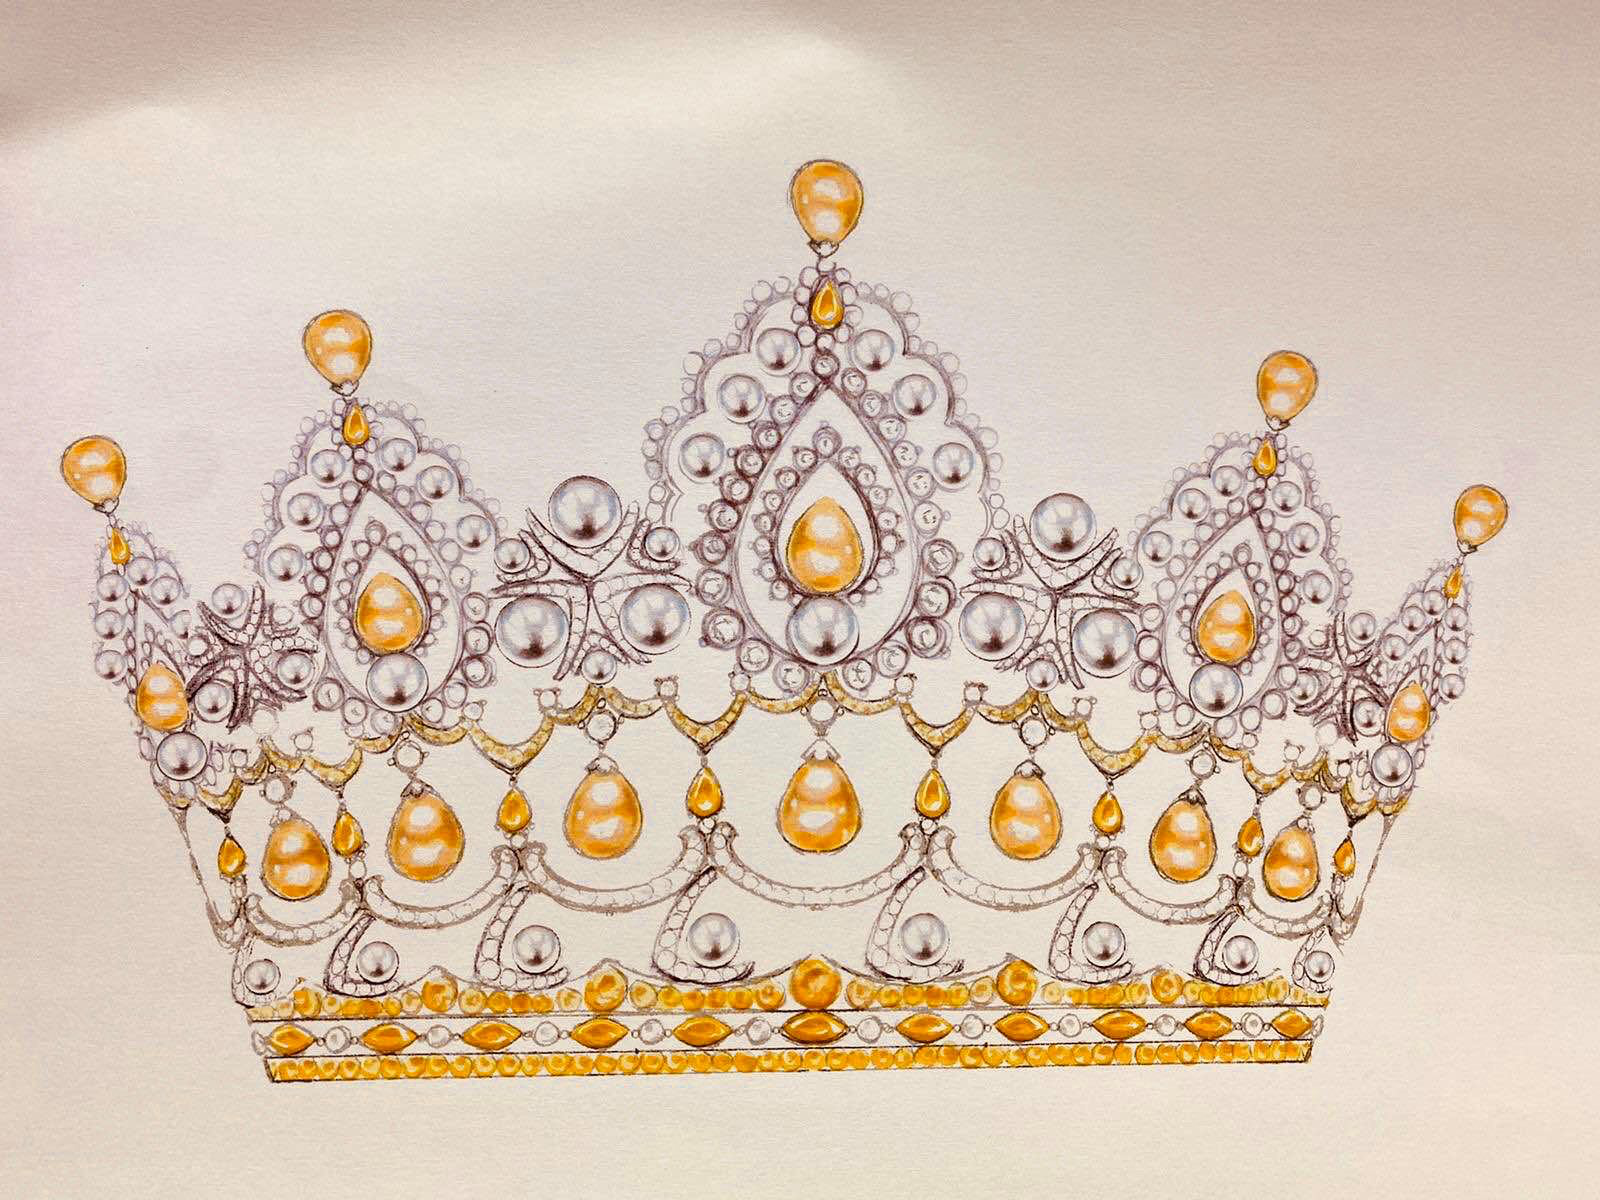 Bạn đã từng mơ tưởng một lần mặc chiếc vương miện lộng lẫy như công chúa? Hãy cùng tìm hiểu và khám phá những chiếc vương miện đẹp nhất trên thế giới.